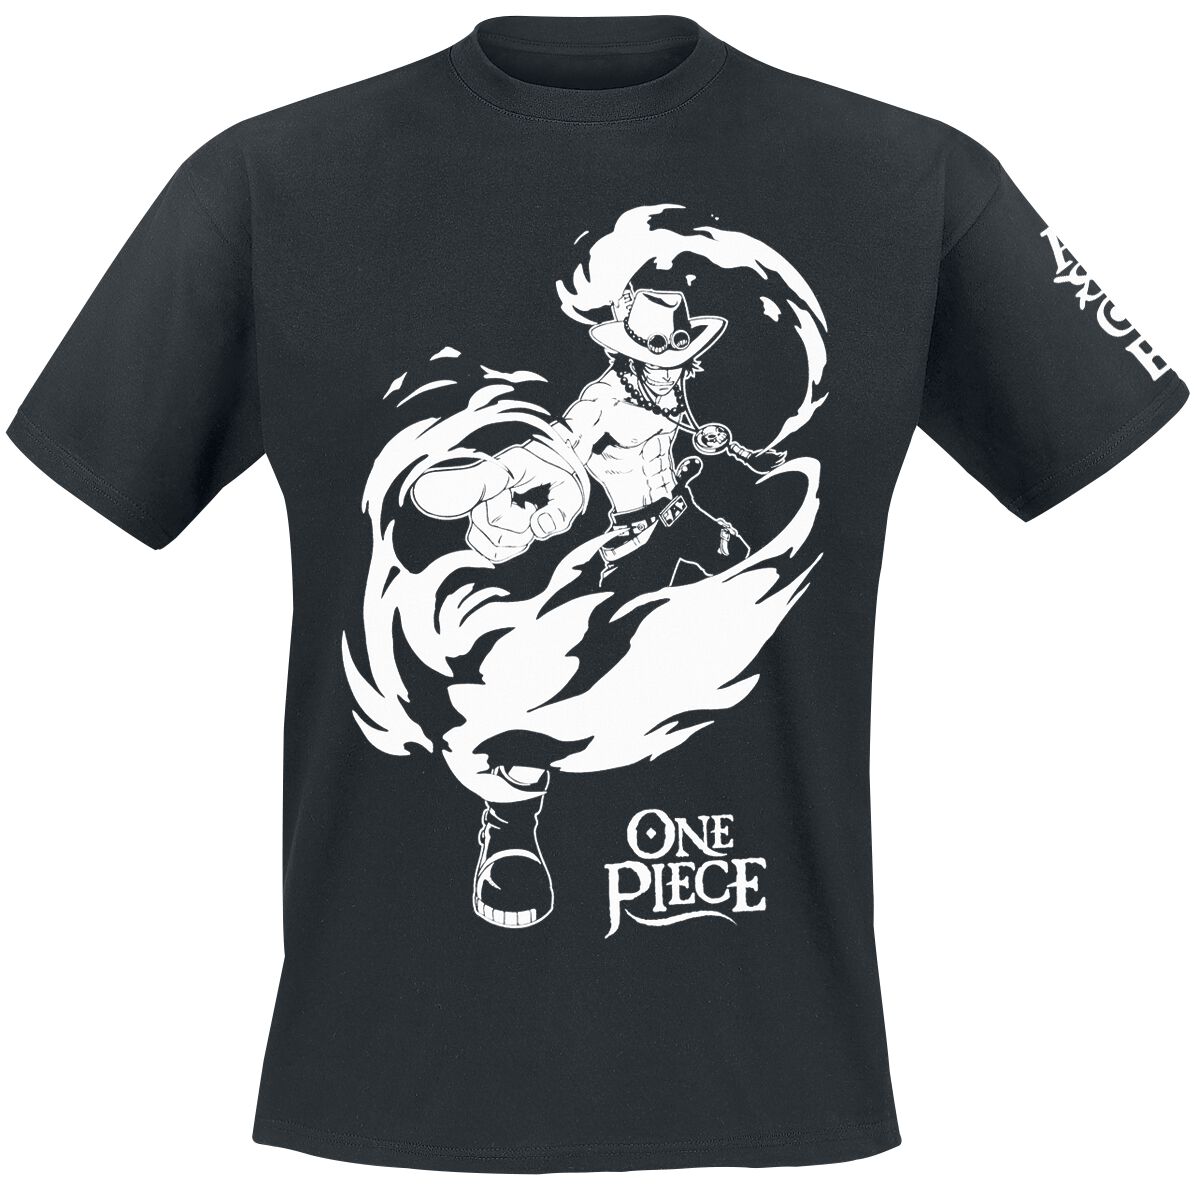 One Piece - Anime T-Shirt - Ace - S bis XL - für Männer - Größe S - schwarz  - Lizenzierter Fanartikel